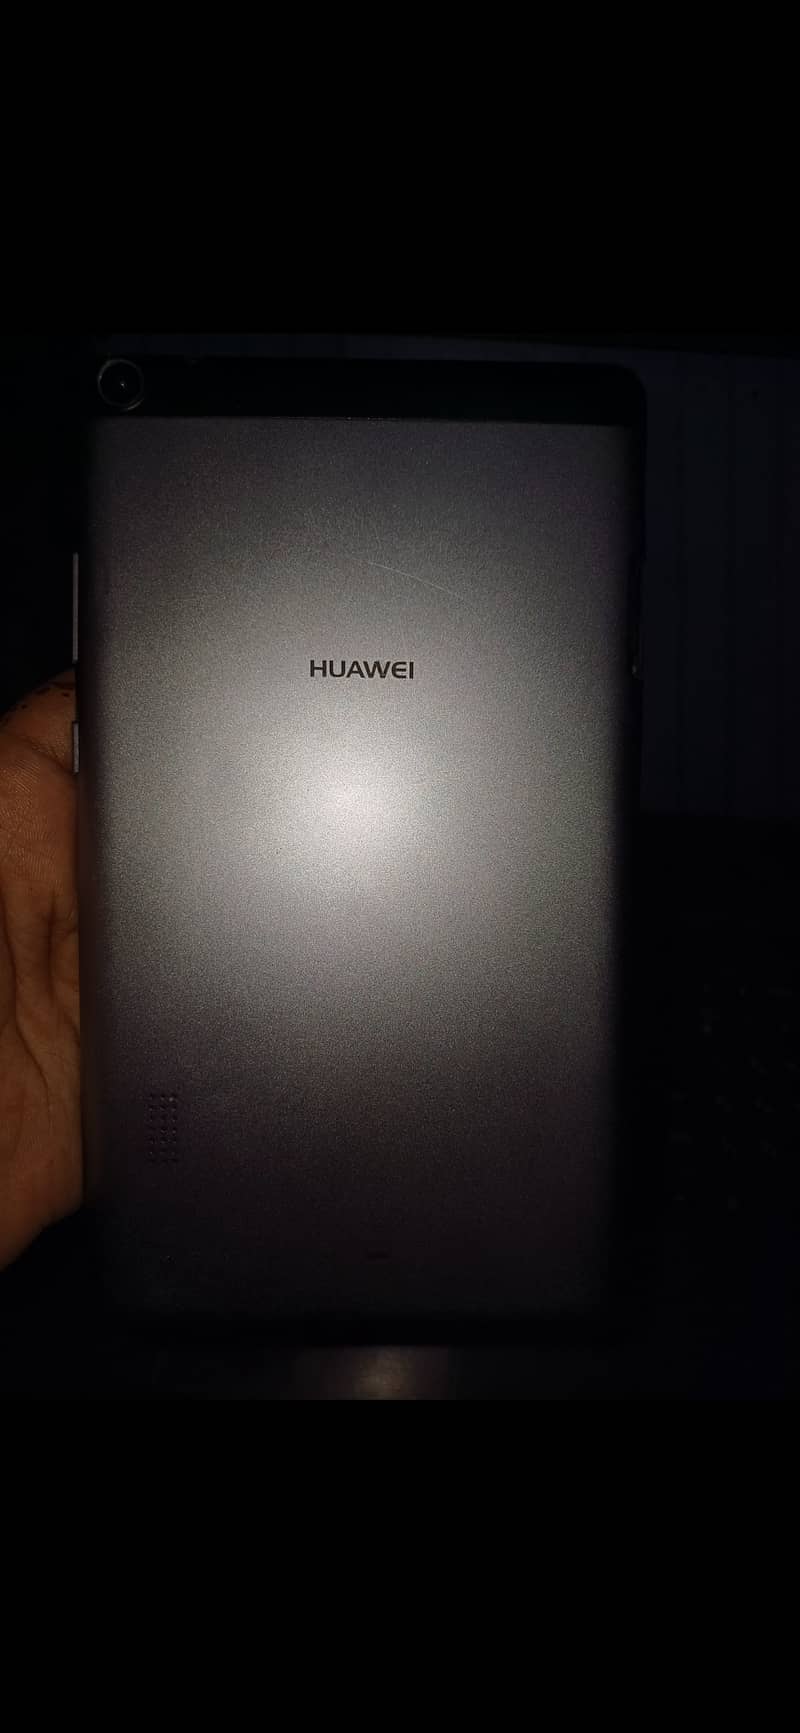 Huawei media pad kids tablet 1